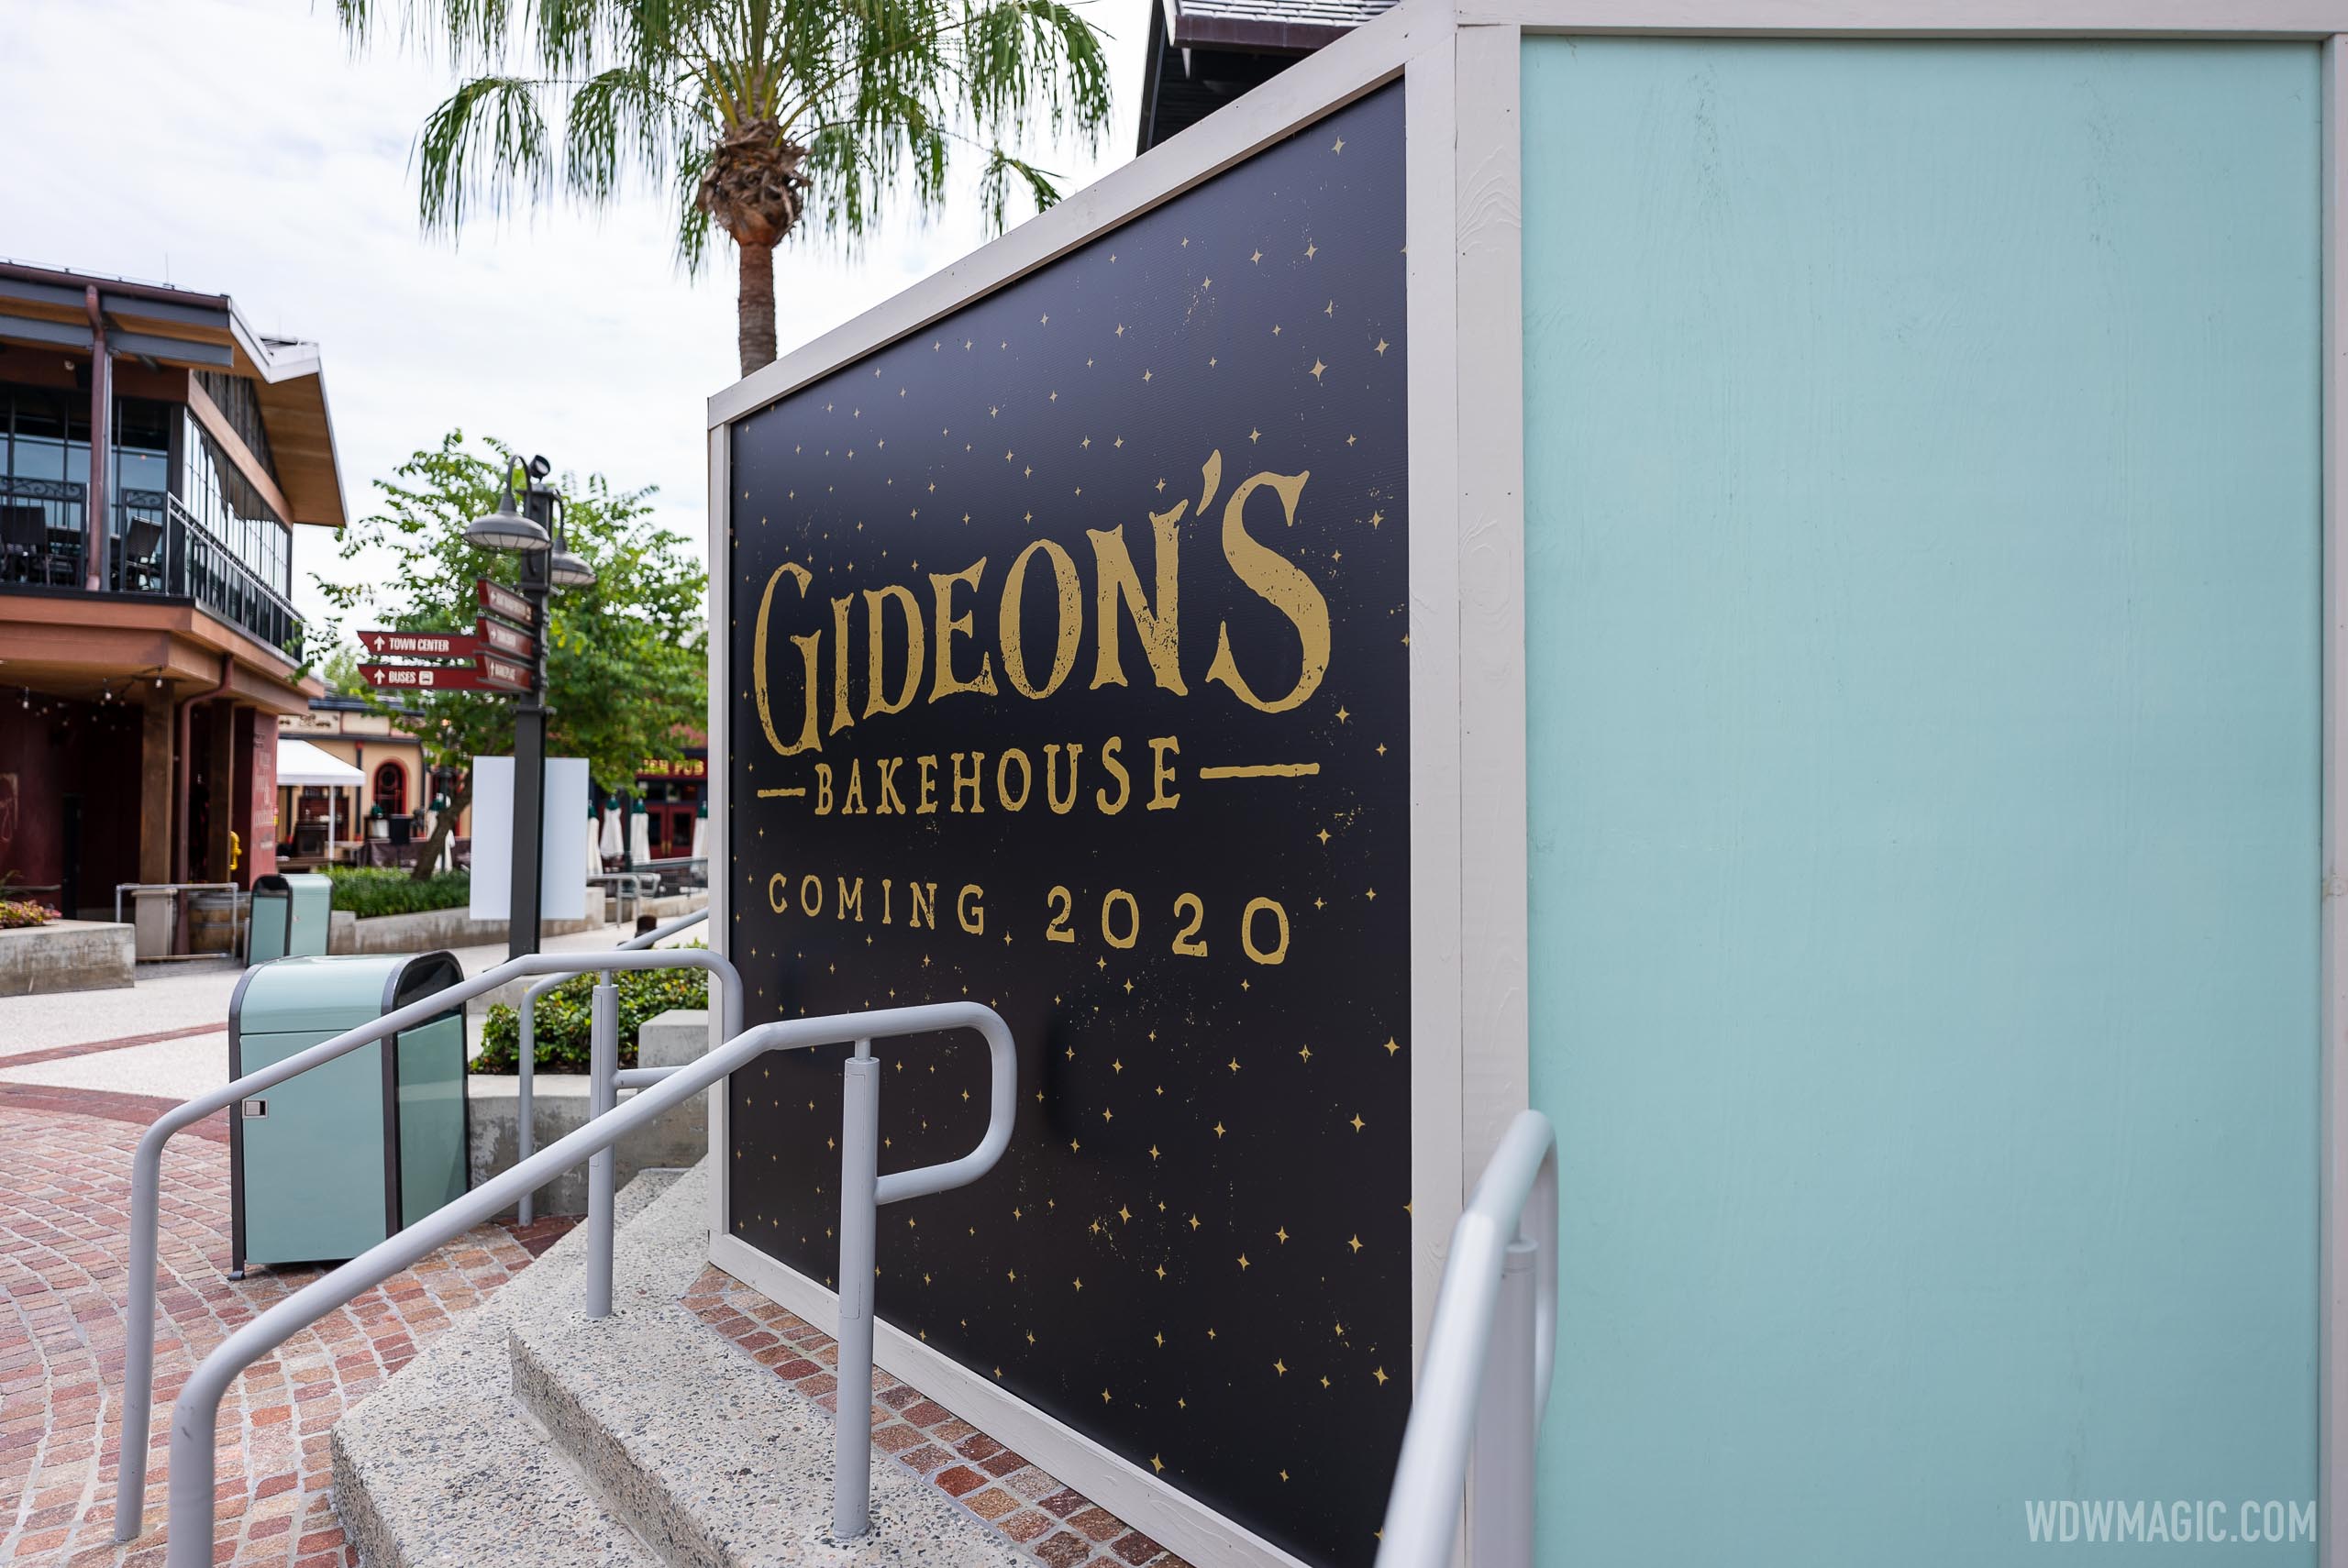 Gideon's Bakehouse construction - October 1 2020